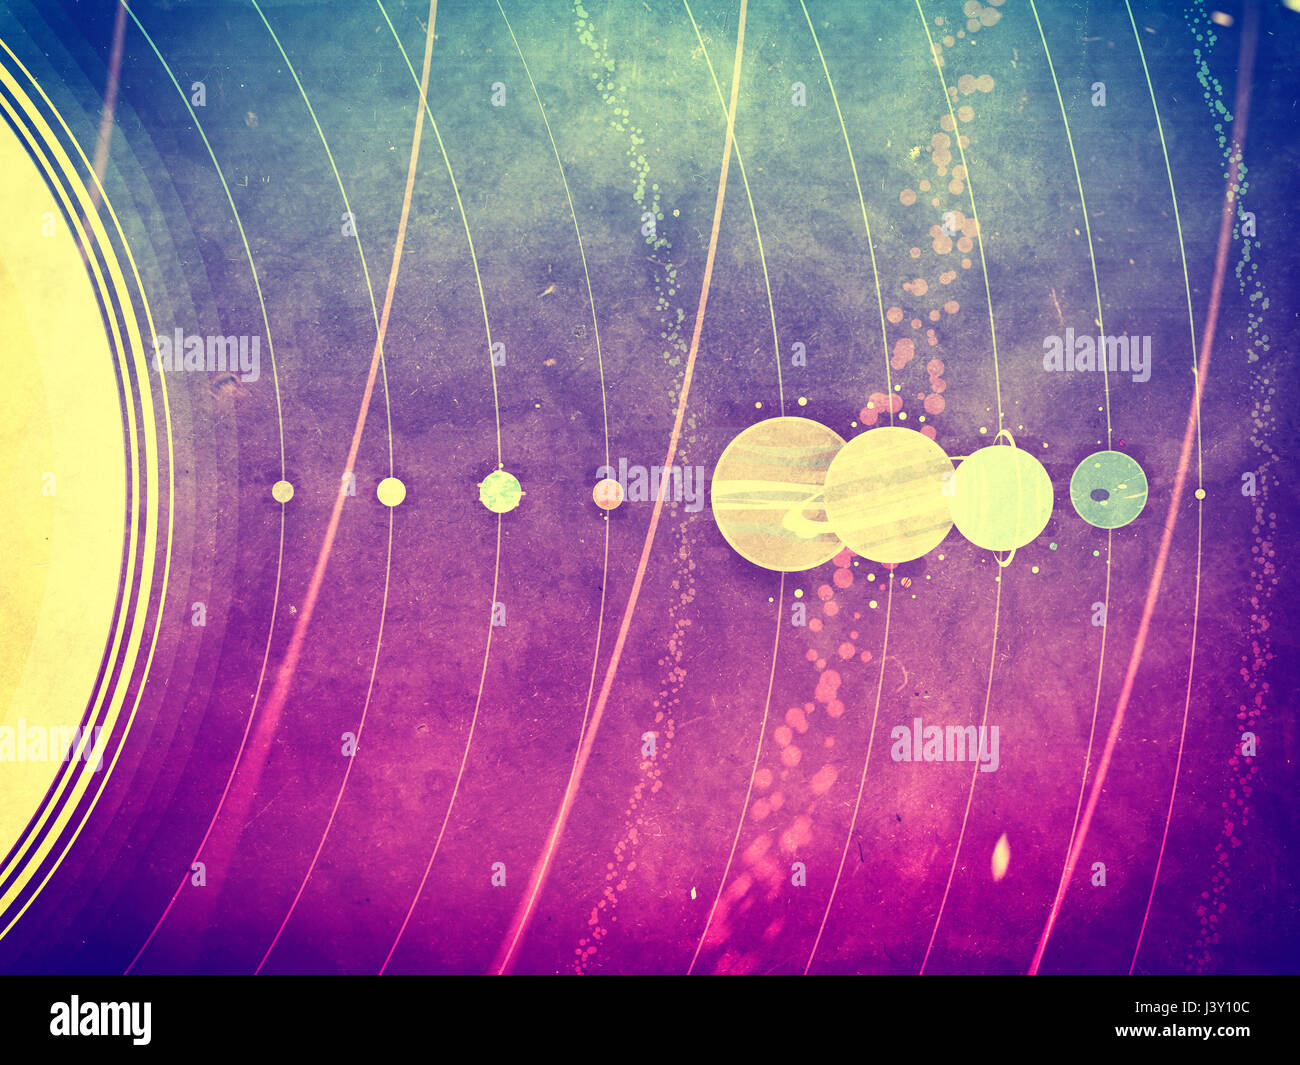 Sonnensystem - Planeten, Kometen, Satelliten der Planeten flach strukturierte Abbildung mit vergleichbaren Abmessungen Stockfoto